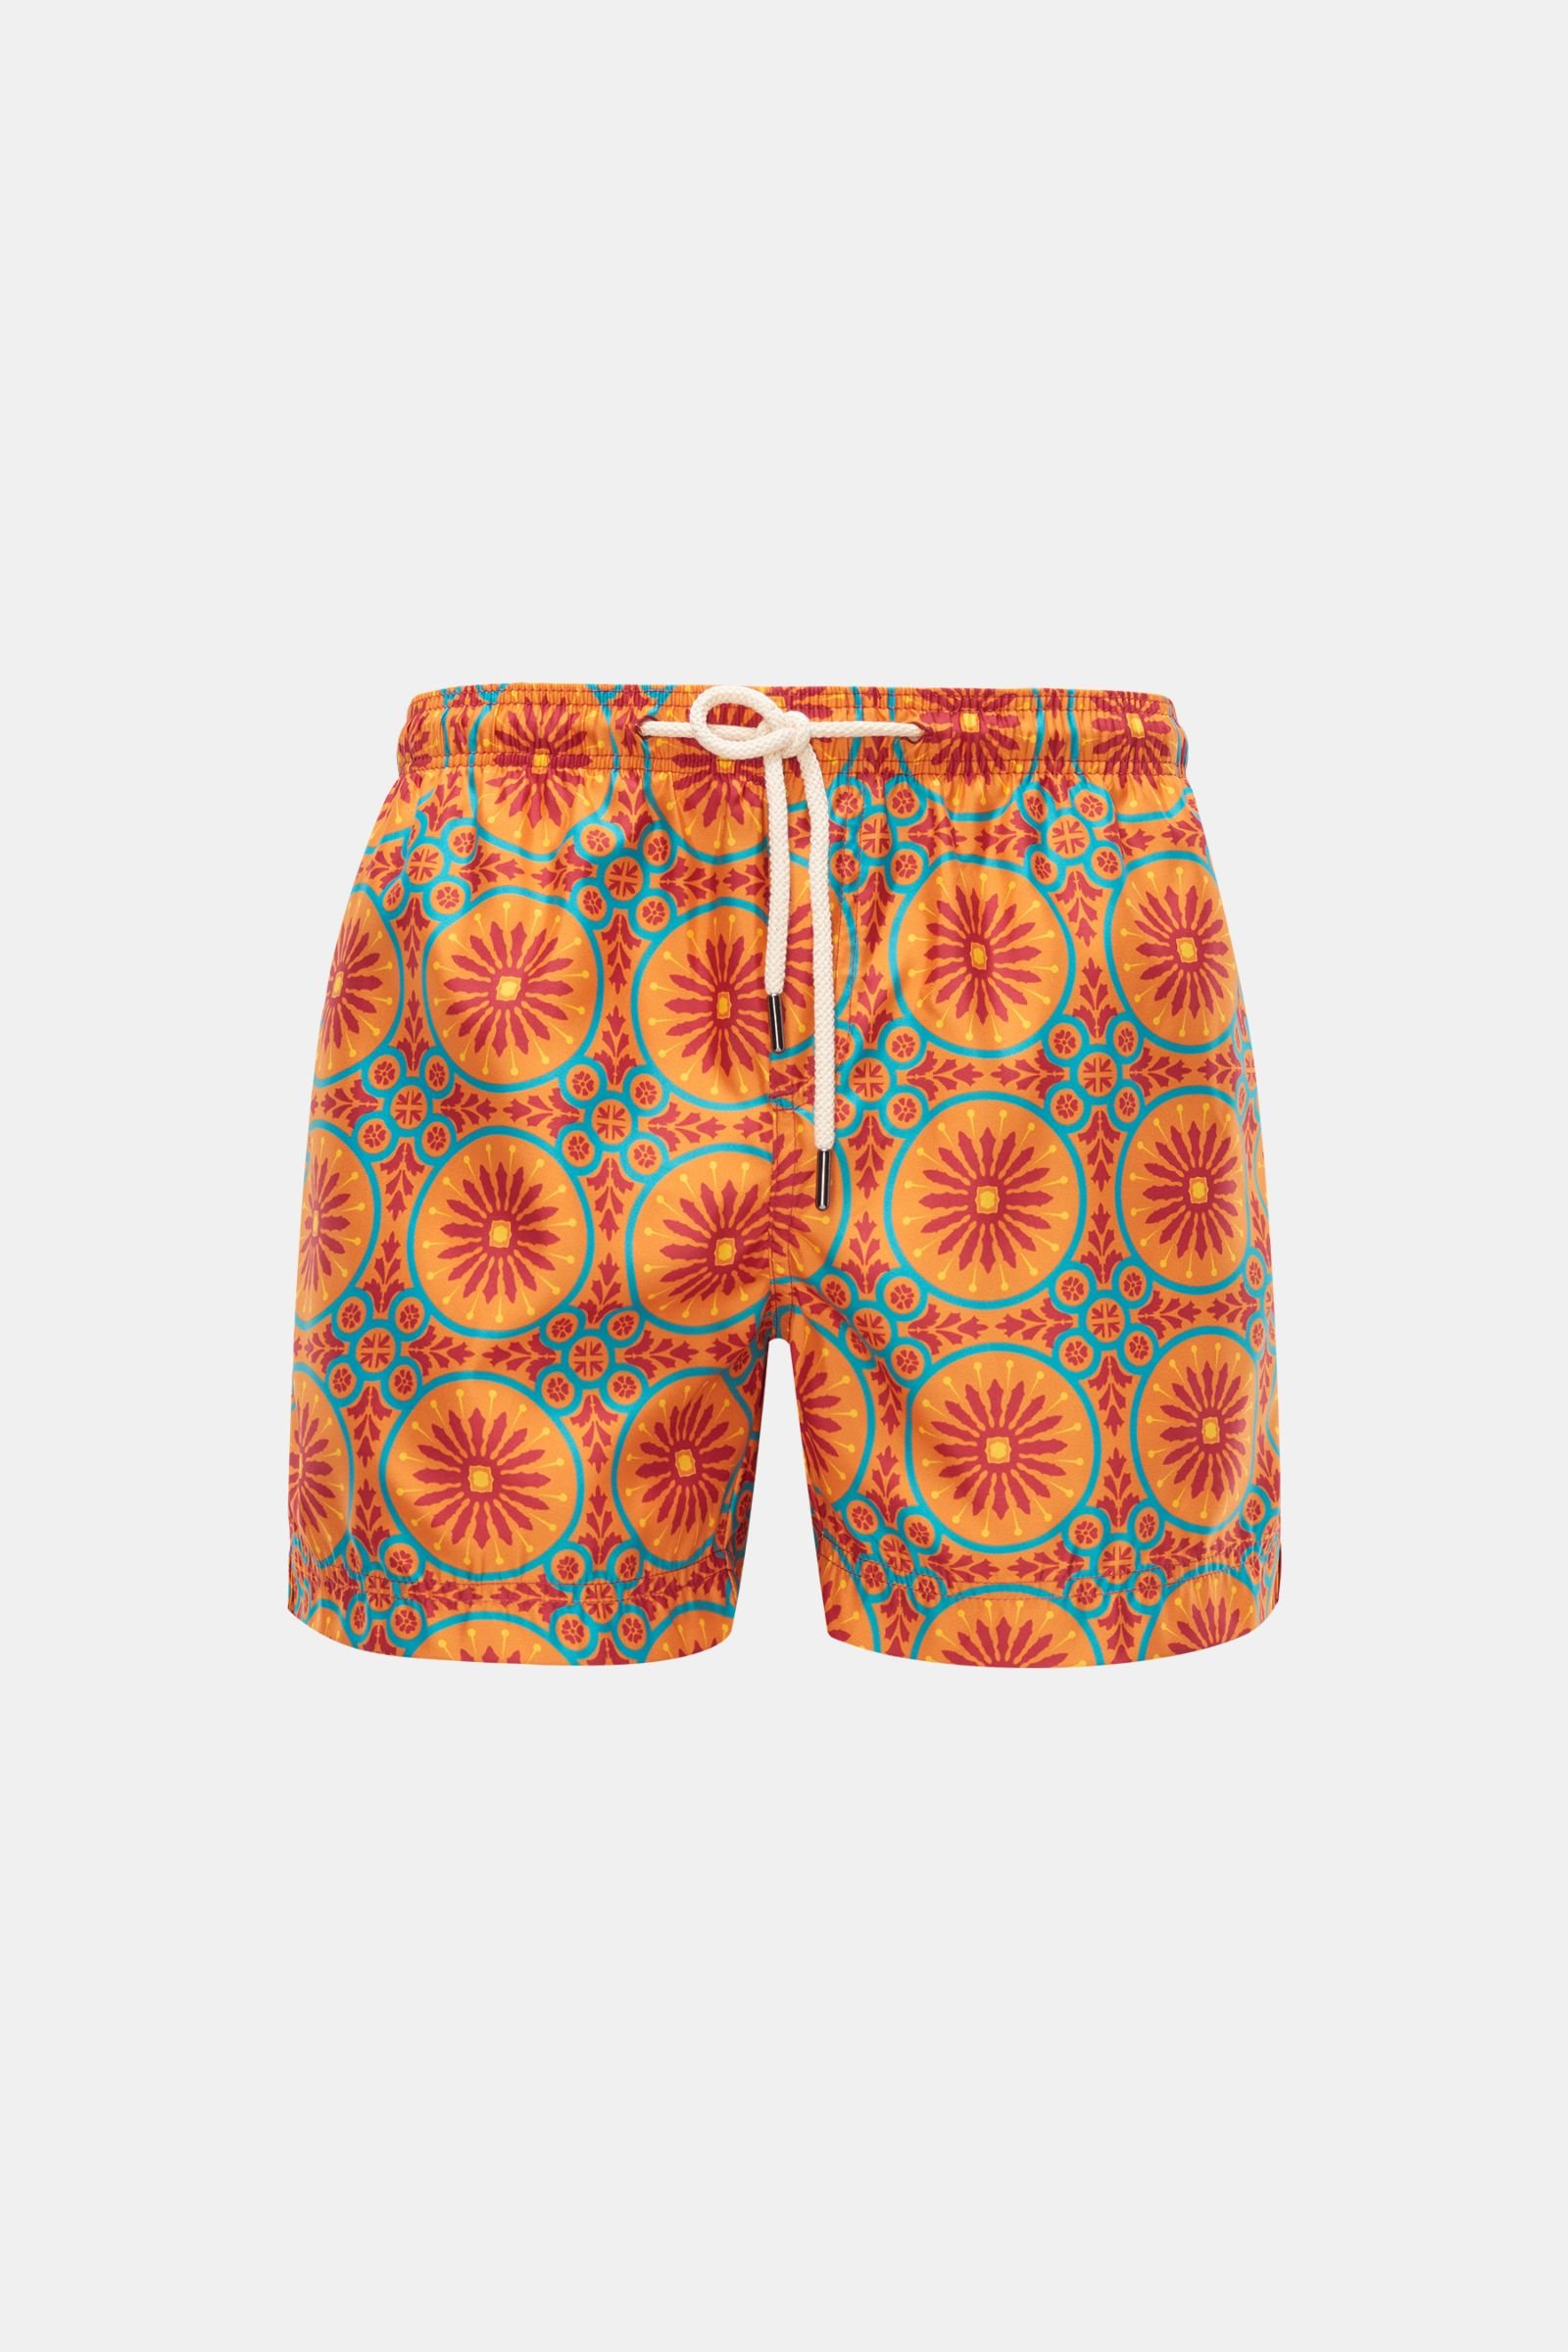 Swim shorts orange/turquoise patterned 